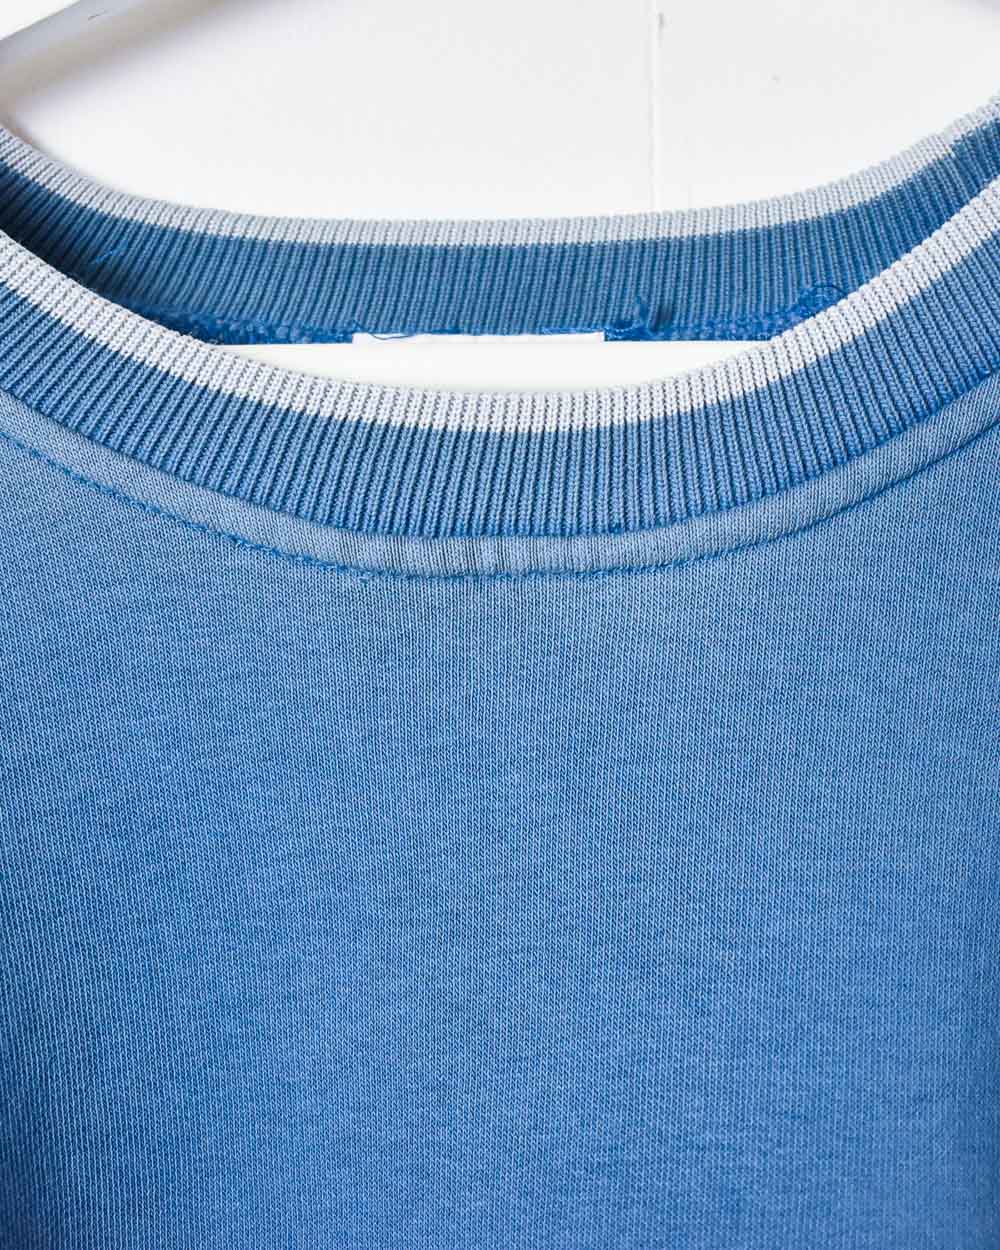 Blue Adidas Sweatshirt - XX-Large